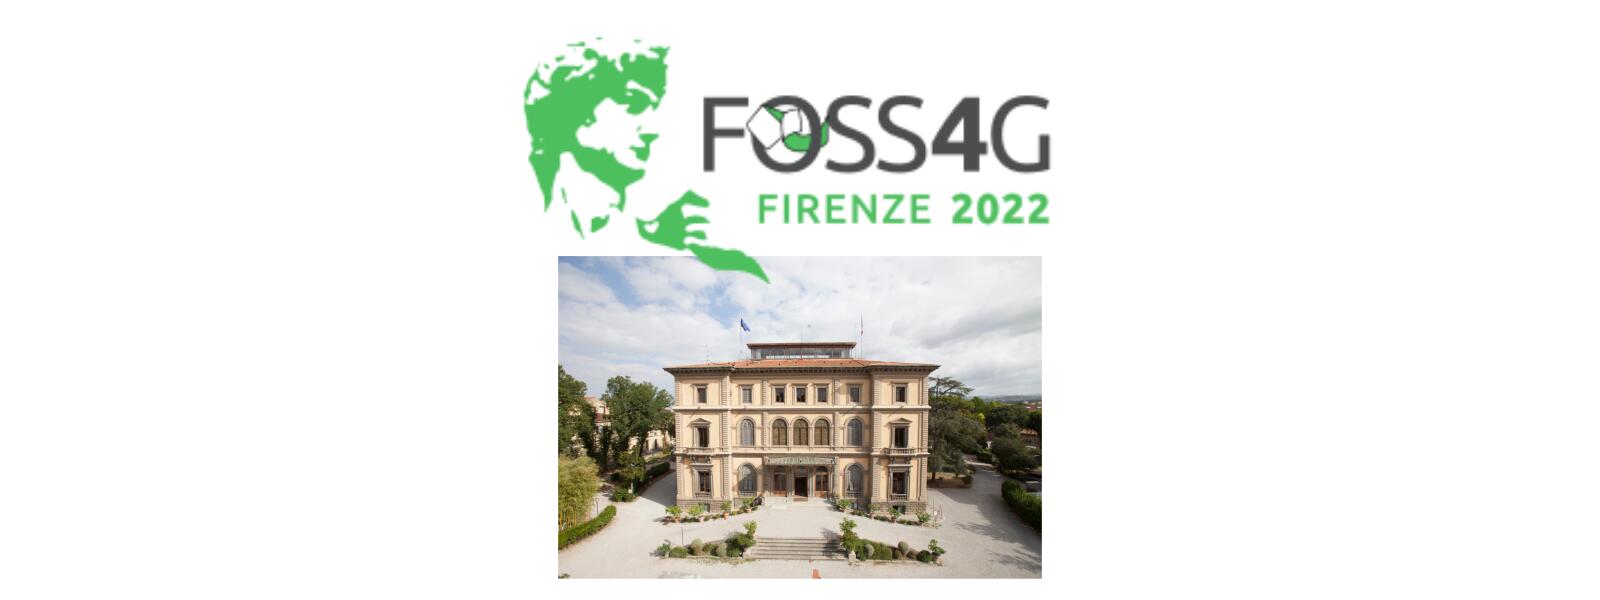 FOSS4G 2022 – Firenze